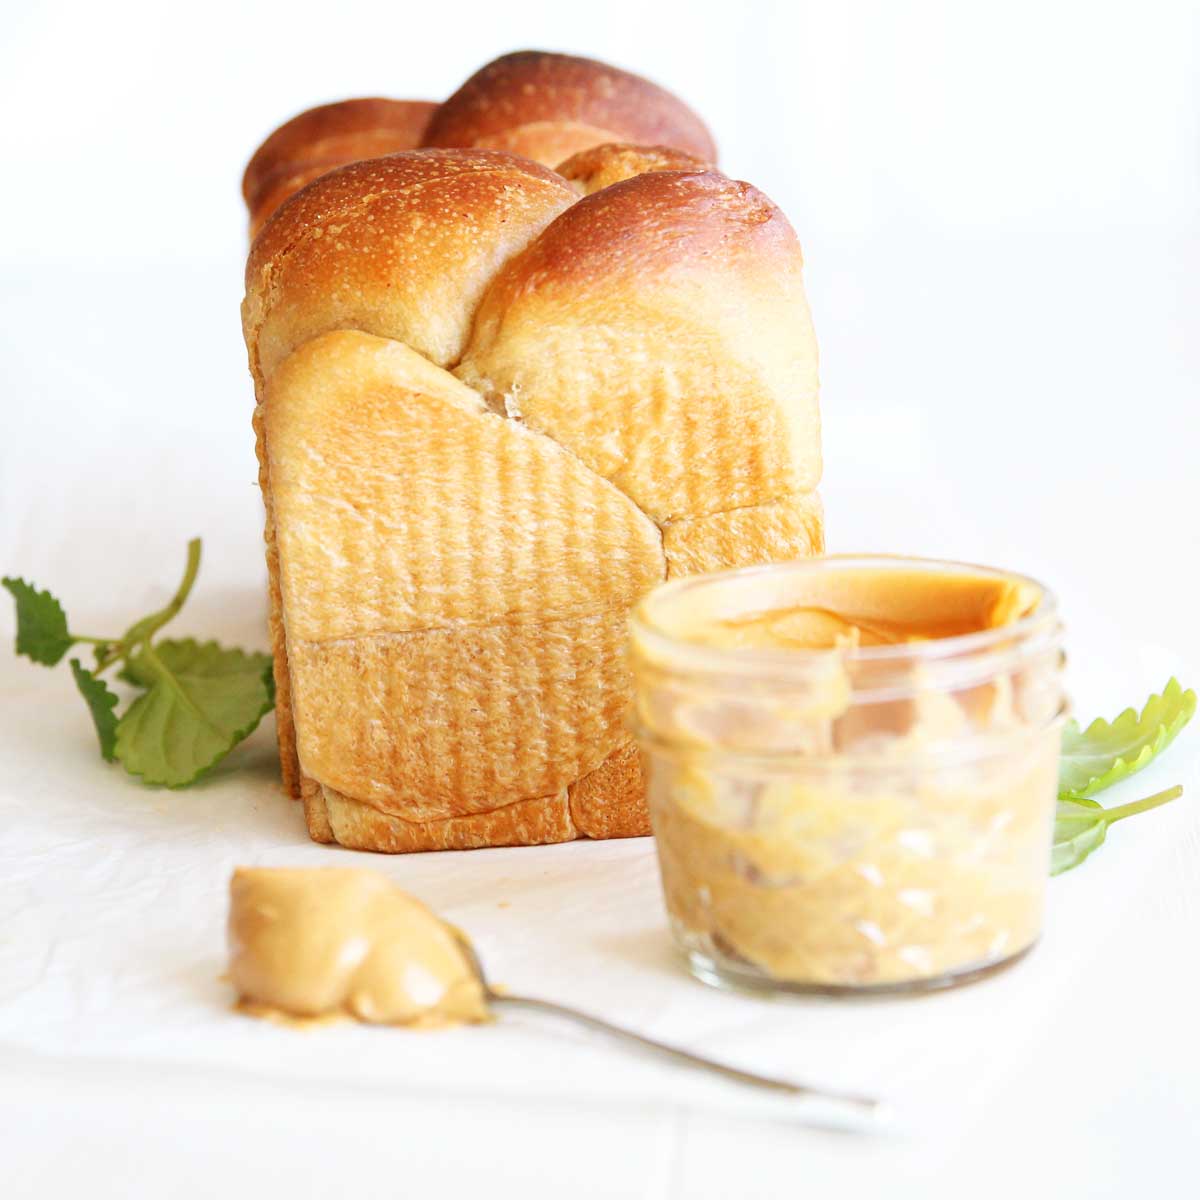 Peanut Butter Yeast Bread (A Healthier Vegan "Brioche" Recipe) - Strawberry Whipped Cream